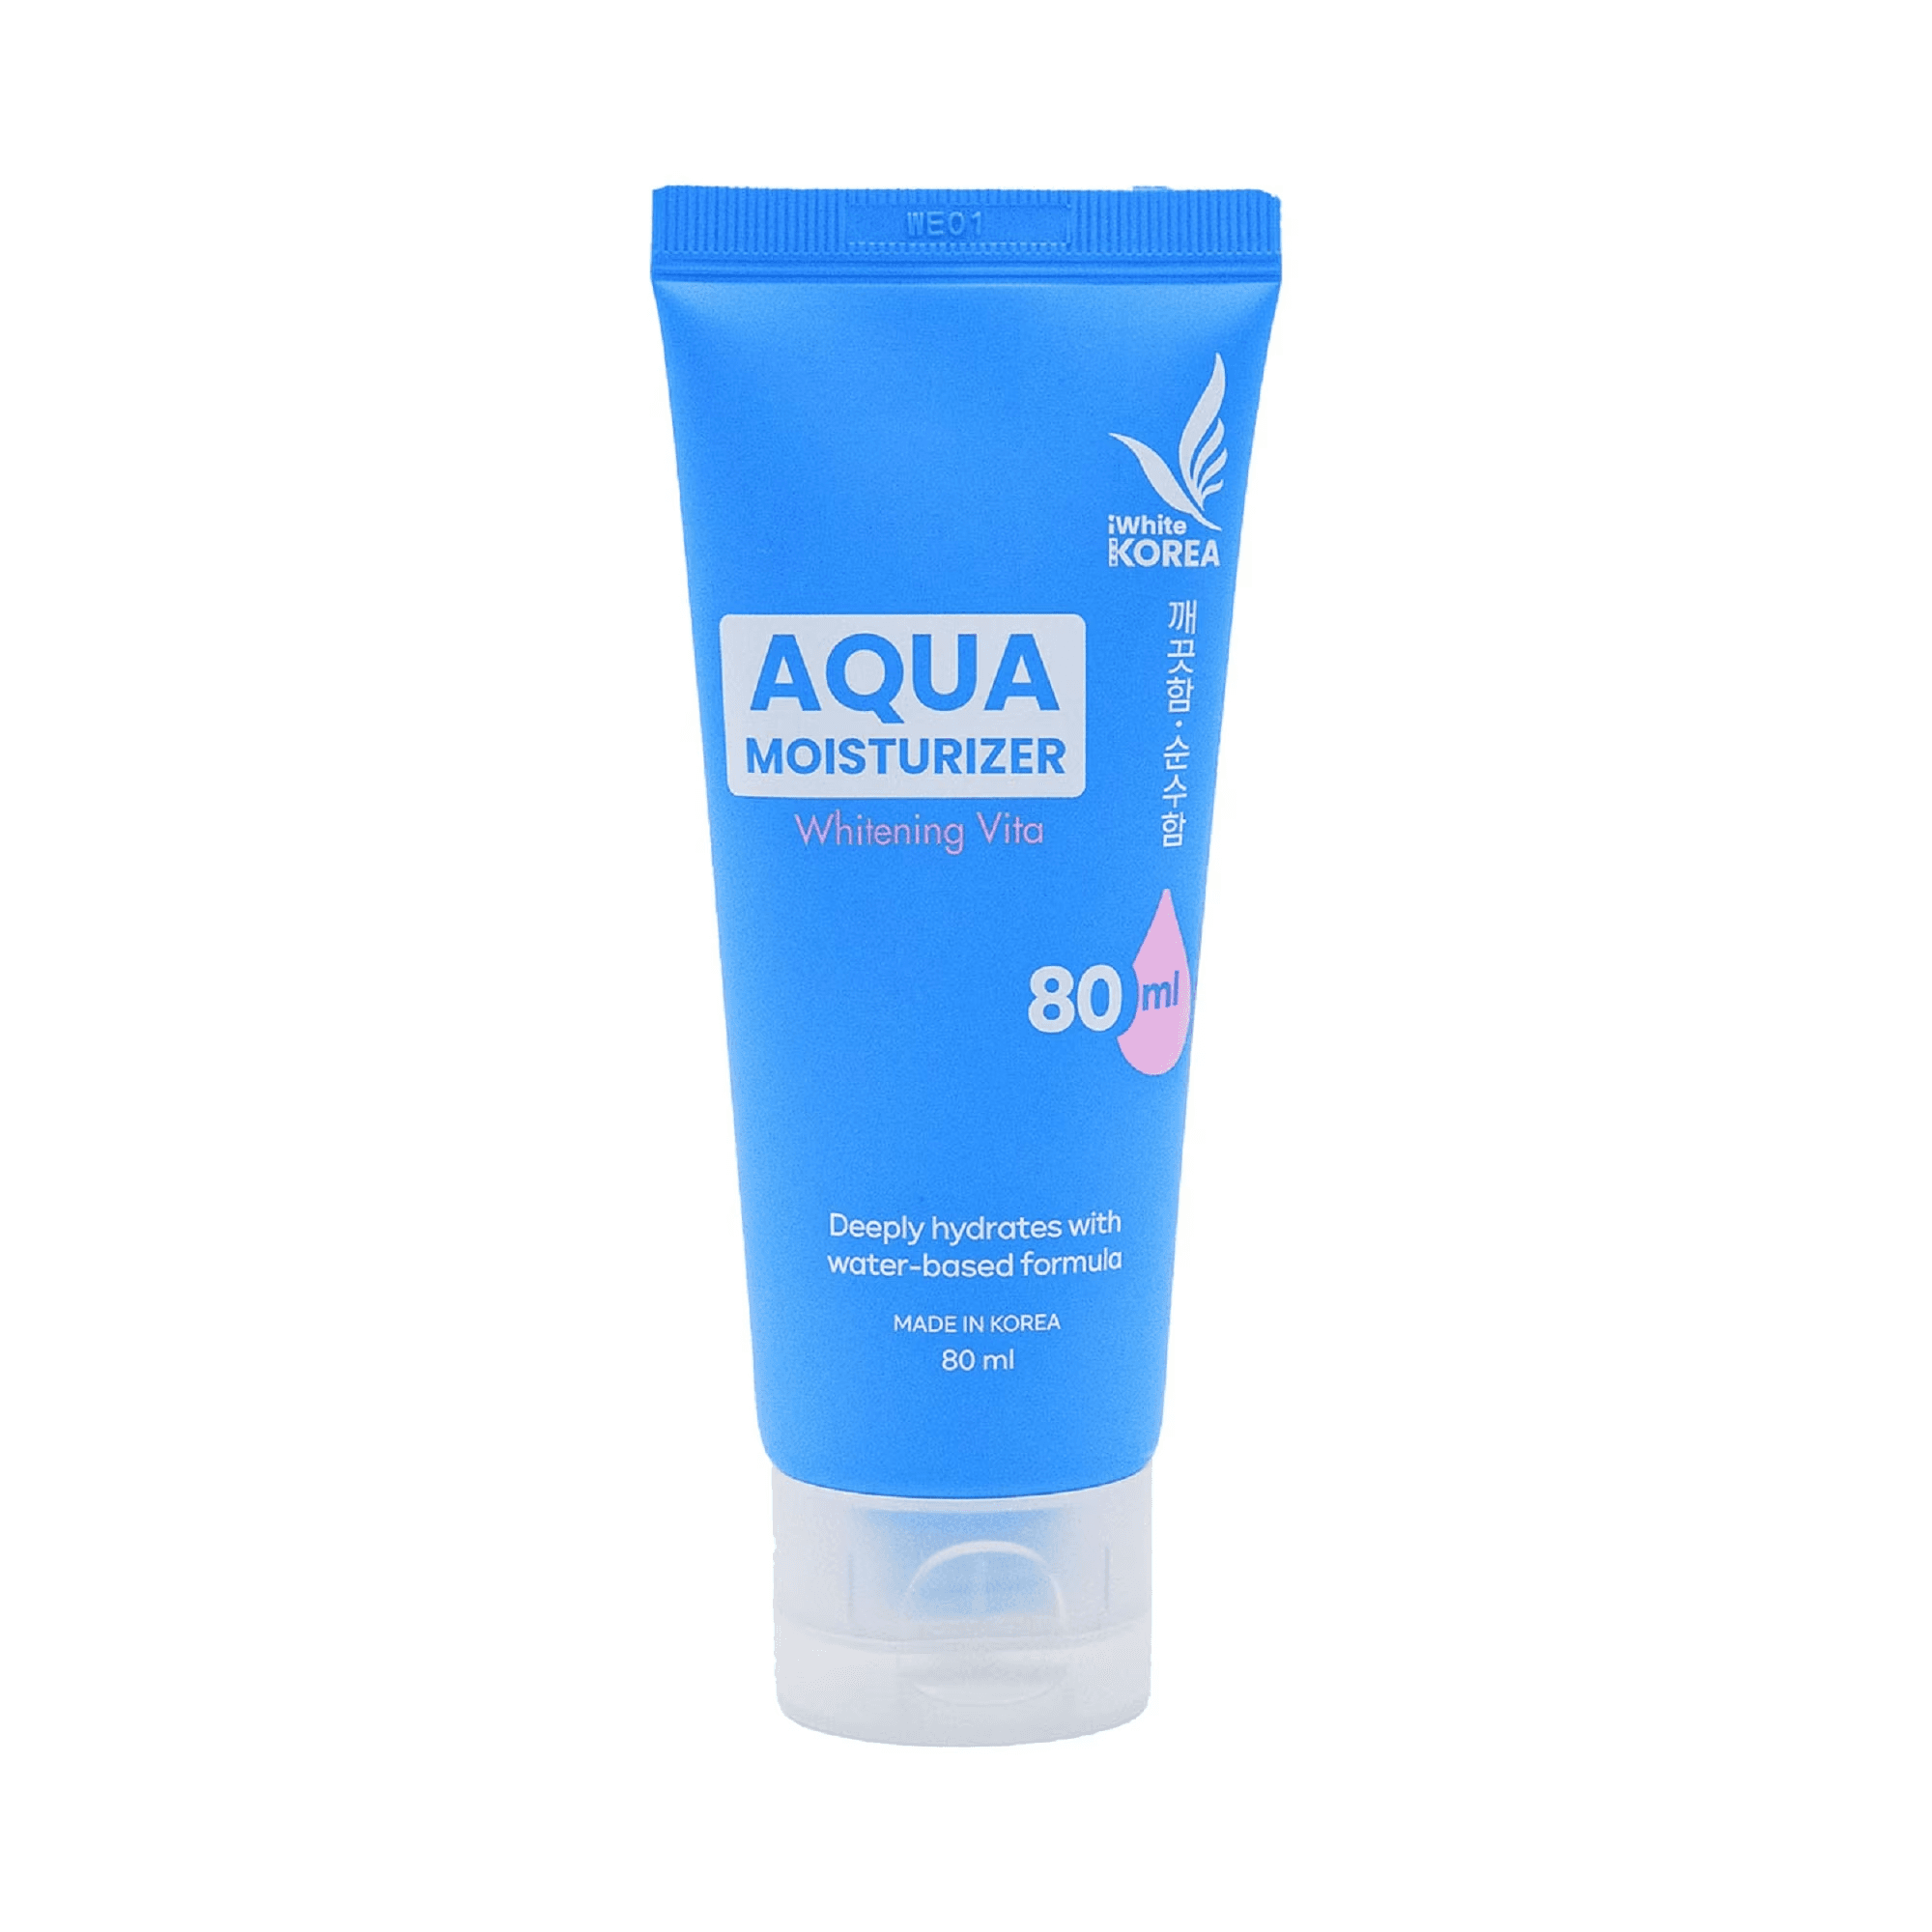 Aqua Moisturizer Whitening Vita